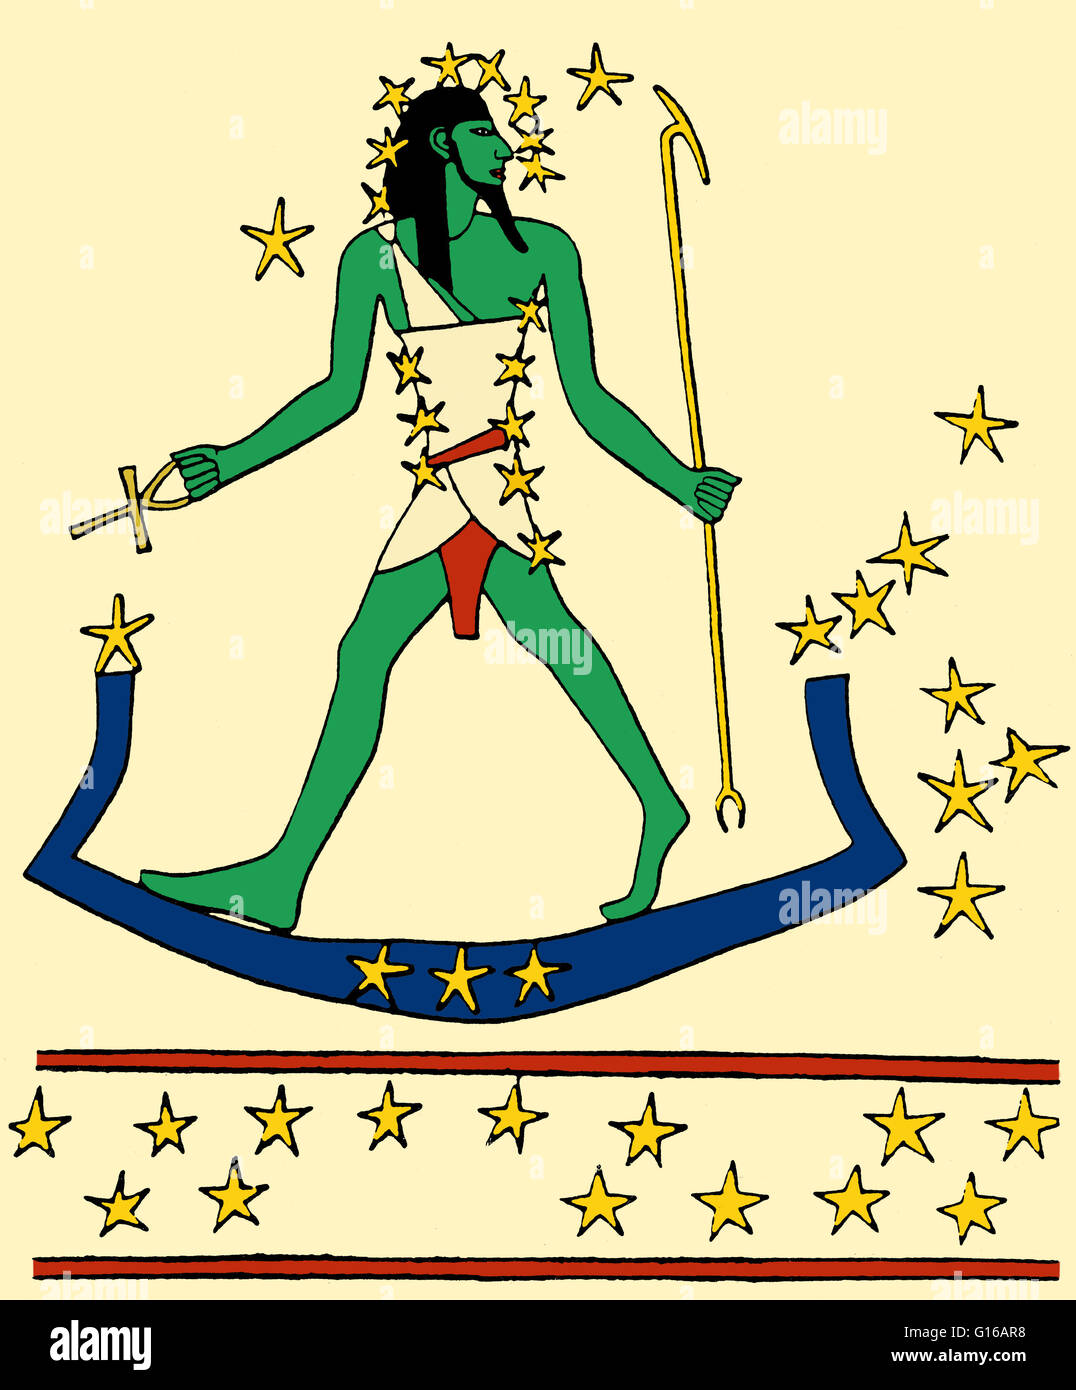 Osiris-Orion viaggia attraverso il cielo sulla sacra barca (stelle di Lepus). Immagine basata su una stella mappa nella tomba di Montemhet a Luxor, circa 650 BC. Le stelle di Orione sono stati associati a Osiride, il dio-sole di rinascita e l'aldilà, dagli antichi Egypti Foto Stock